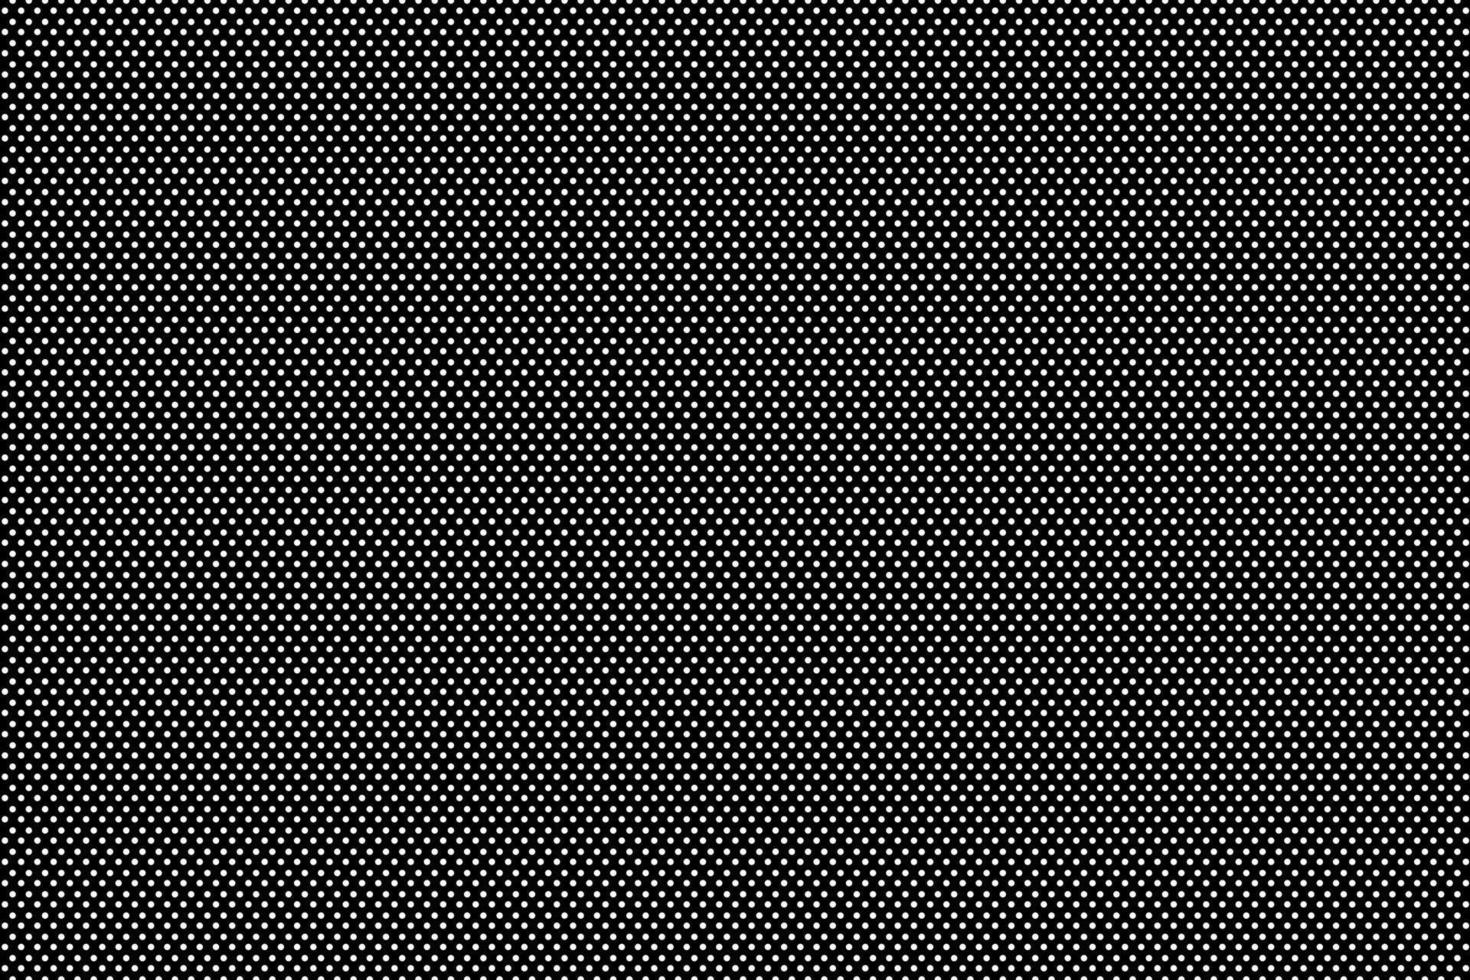 Schwarzer Hintergrund Weißes kleines Kreismuster, das als Löcher gleicher Größe platziert ist, kann verwendet werden, um Vektorarbeitstapeten usw. zu entwerfen vektor